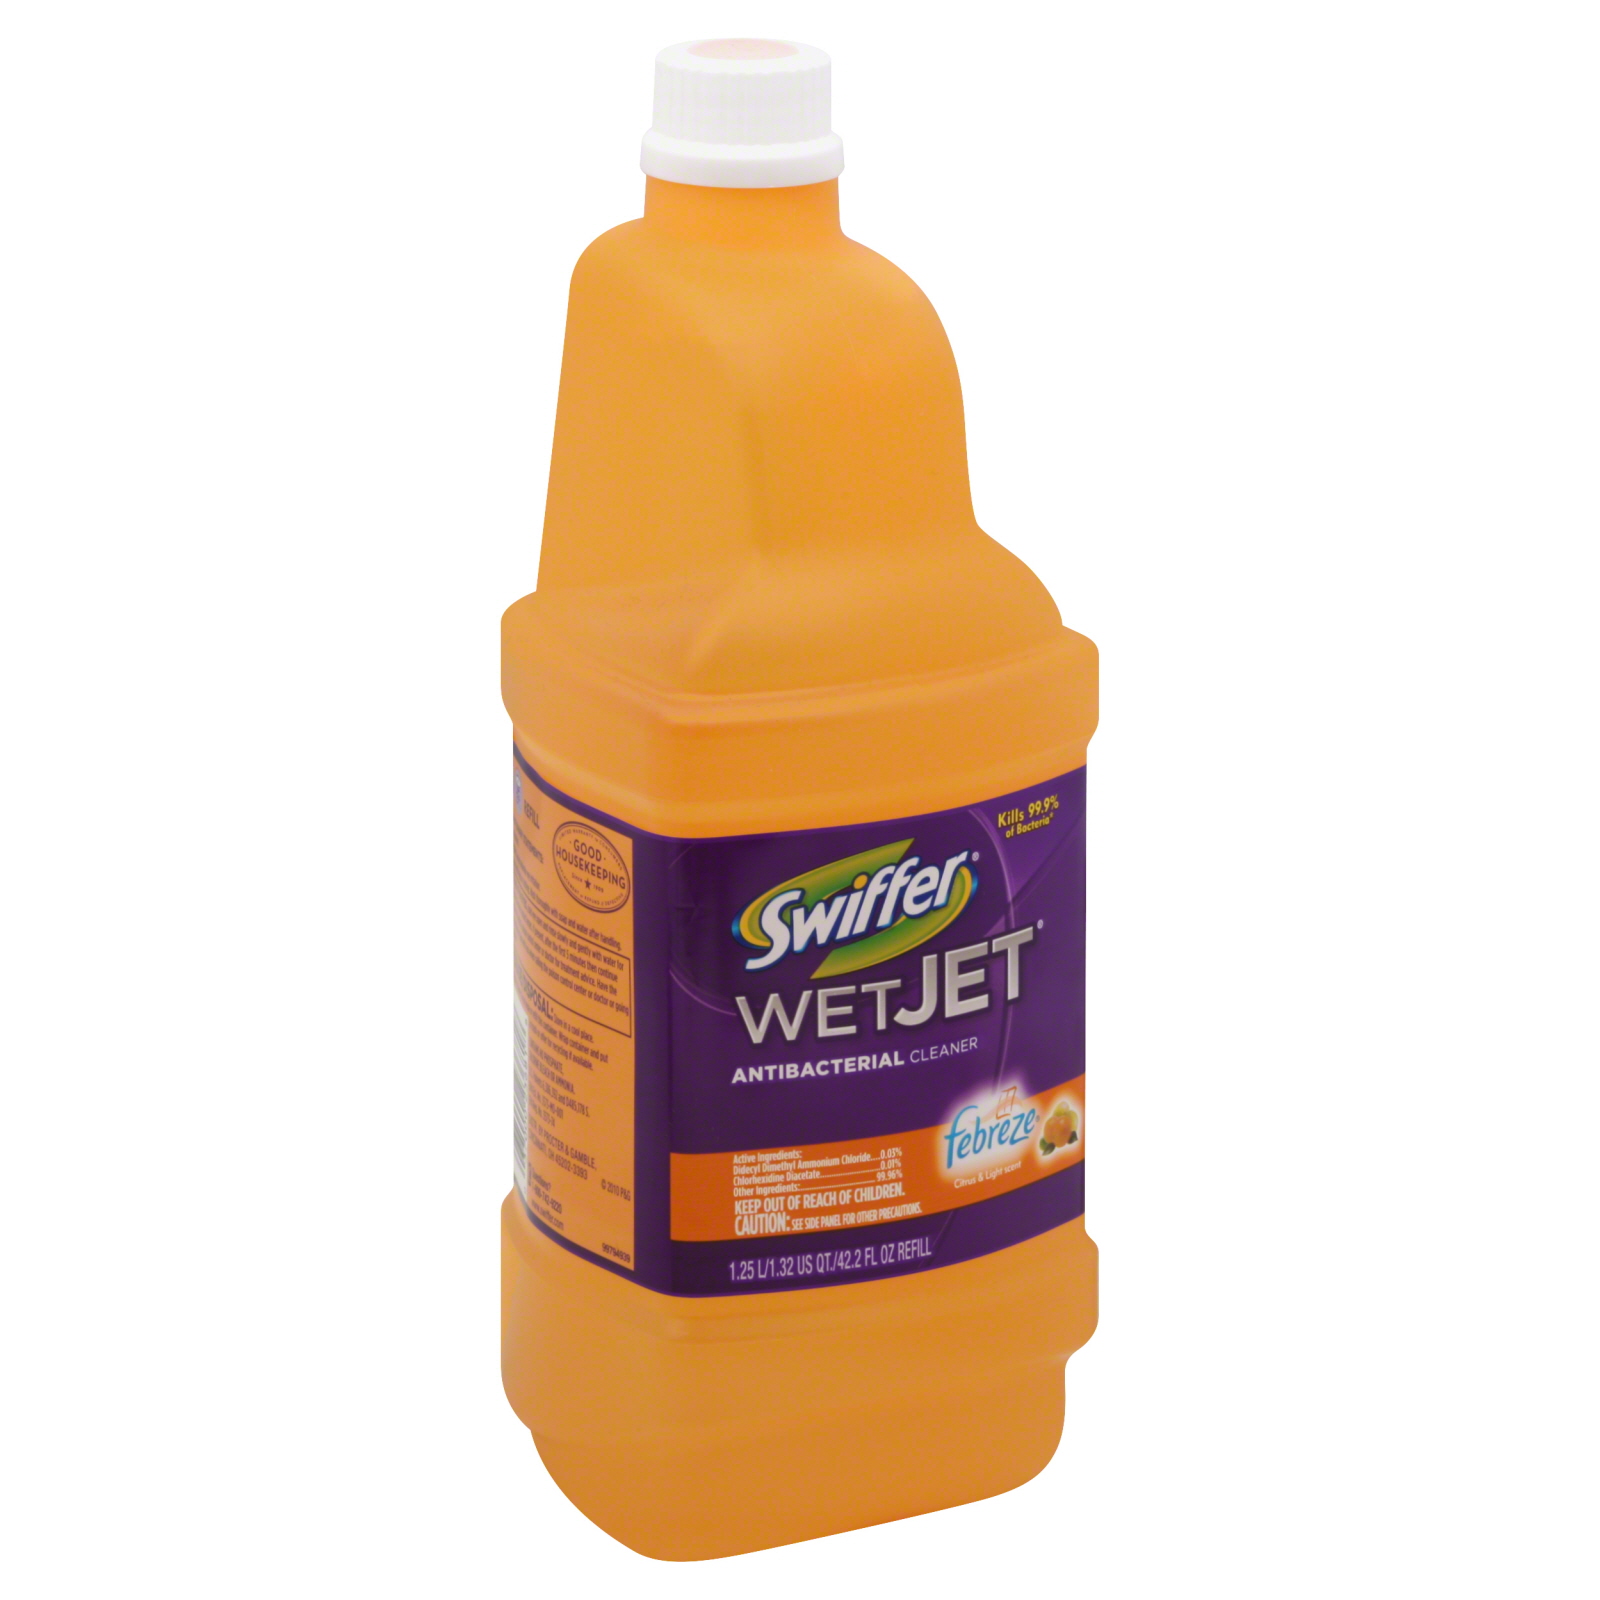 Swiffer WetJet Cleaner, Antibacterial, Febreze Citrus & Light Scent, 42.2 fl oz (1.32 qt) 1.25 lt